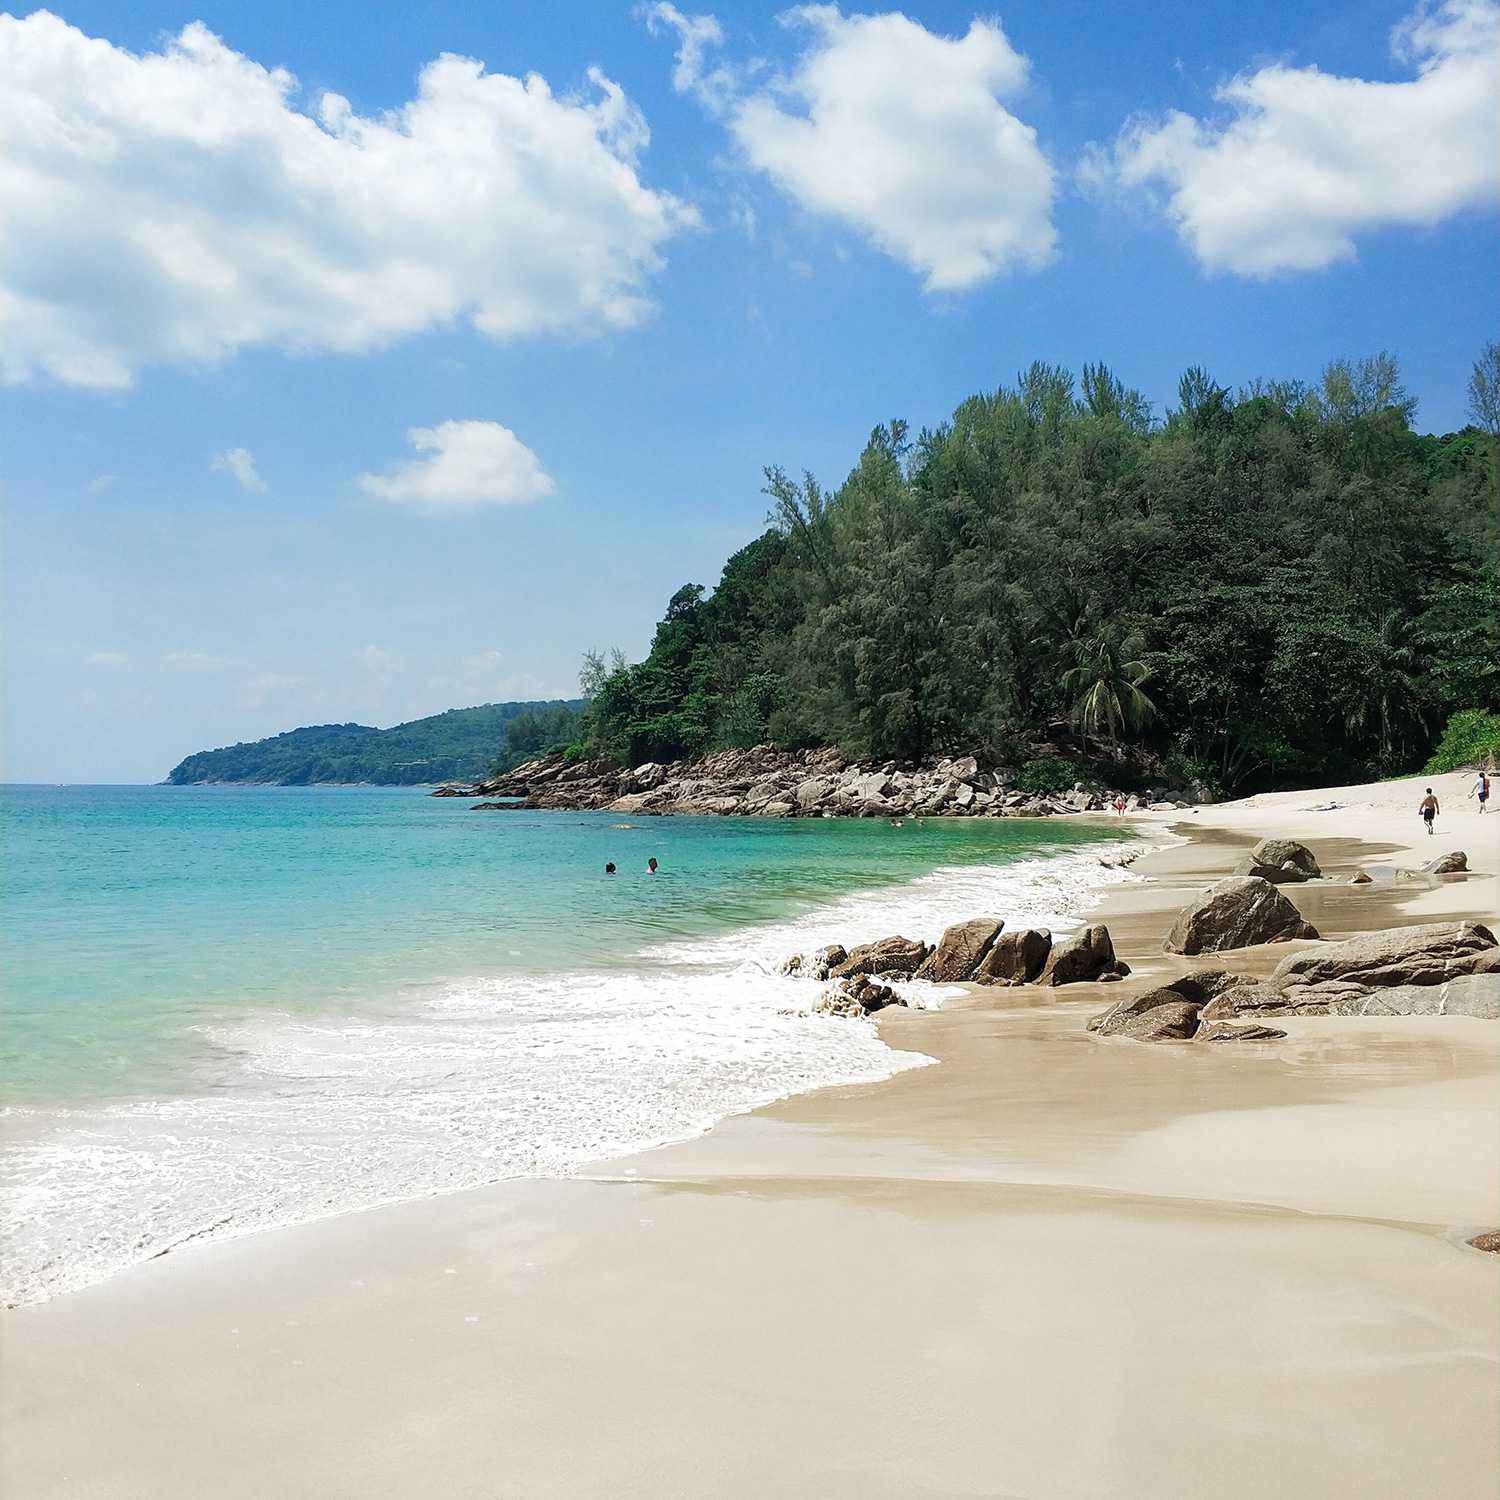 Пляж ката, пхукет, таиланд - карта, описание, отзывы, достопримечательности, фото, видео | гид по пхукету